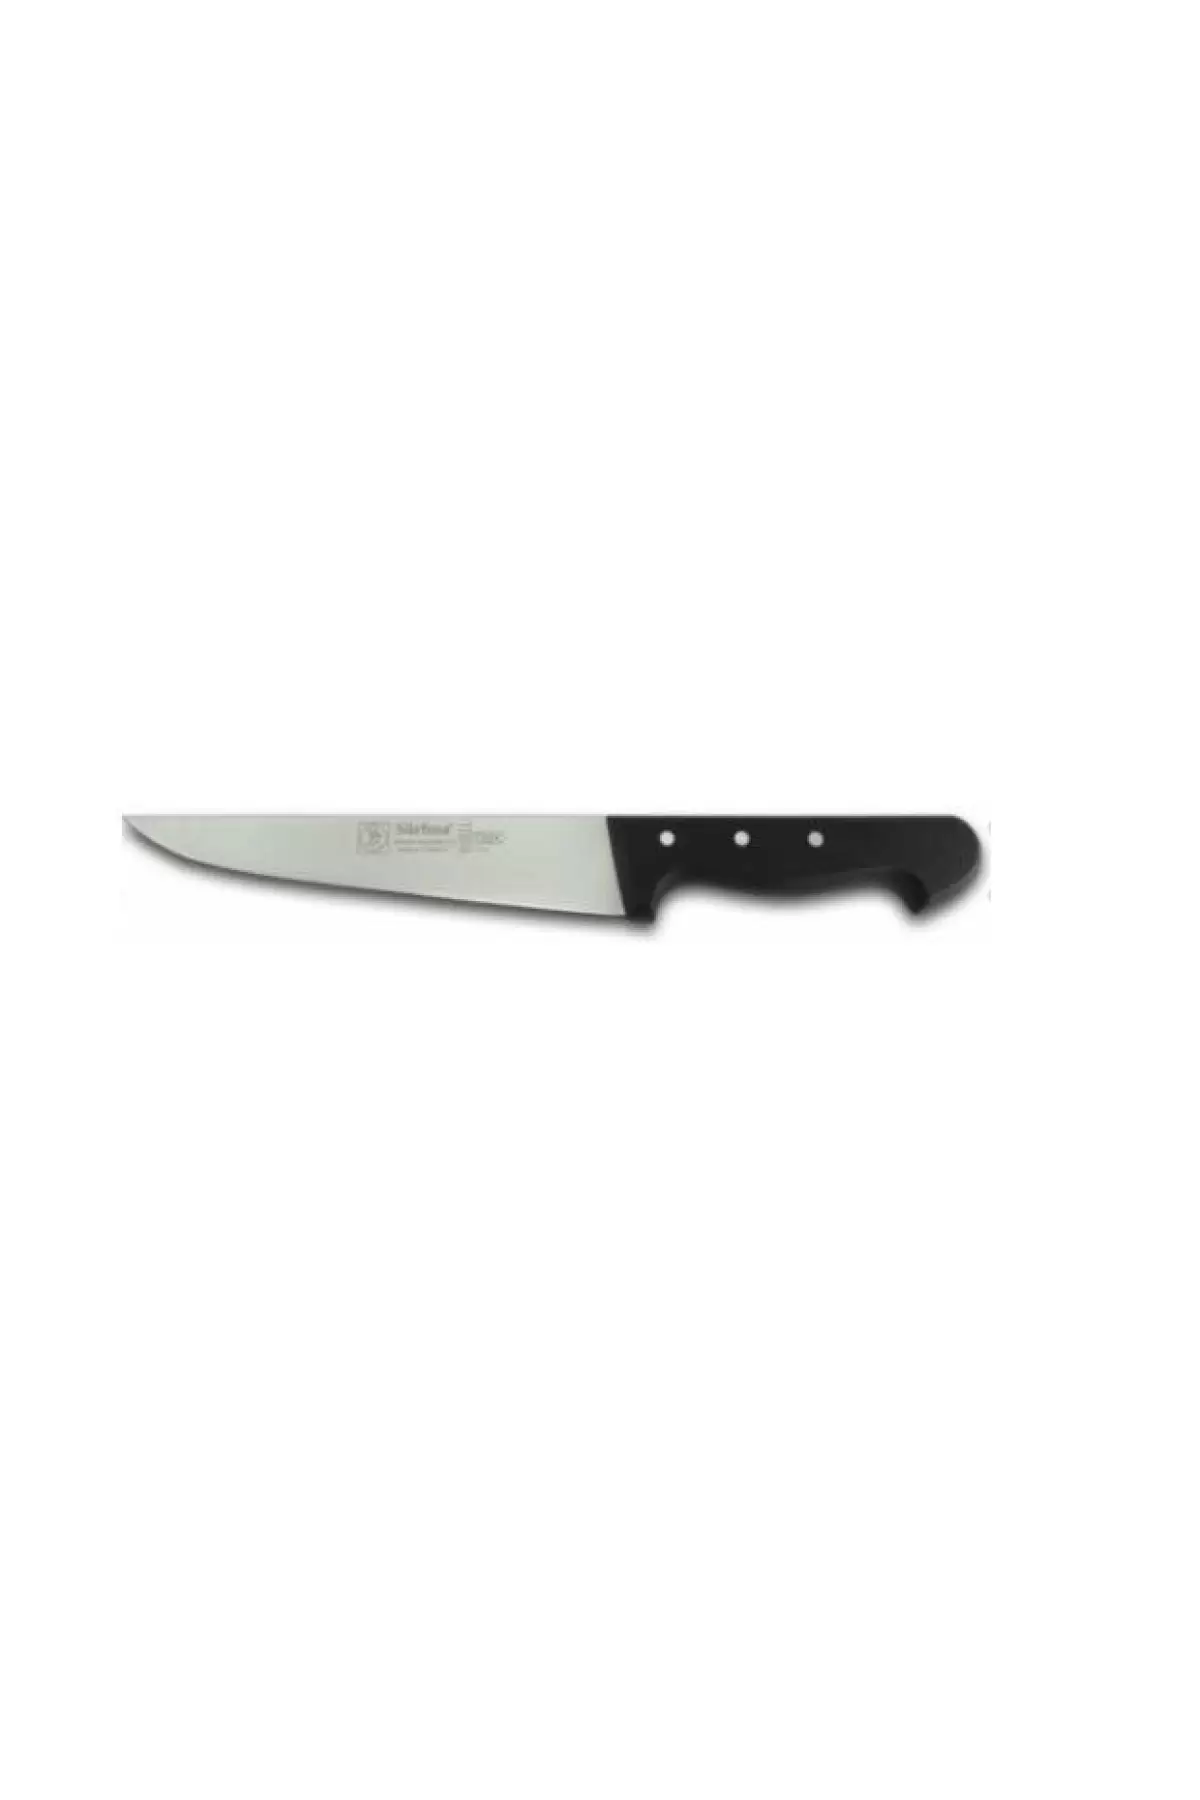 Sürbisa 61031 Mutfak Bıçağı 18.5 Cm